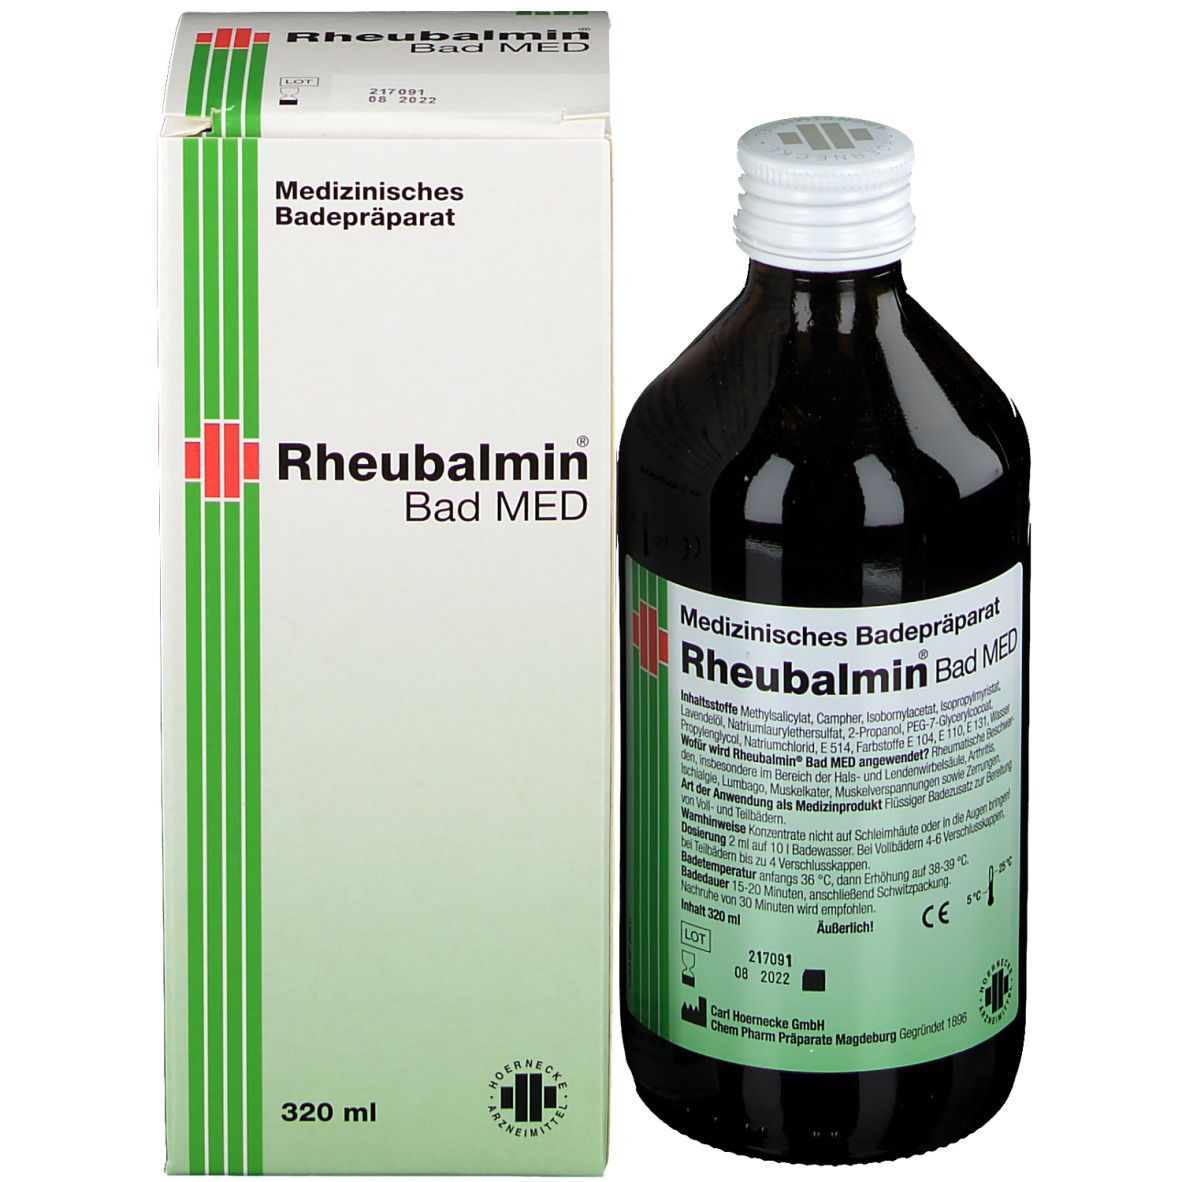 Rheubalmin® Bad MED